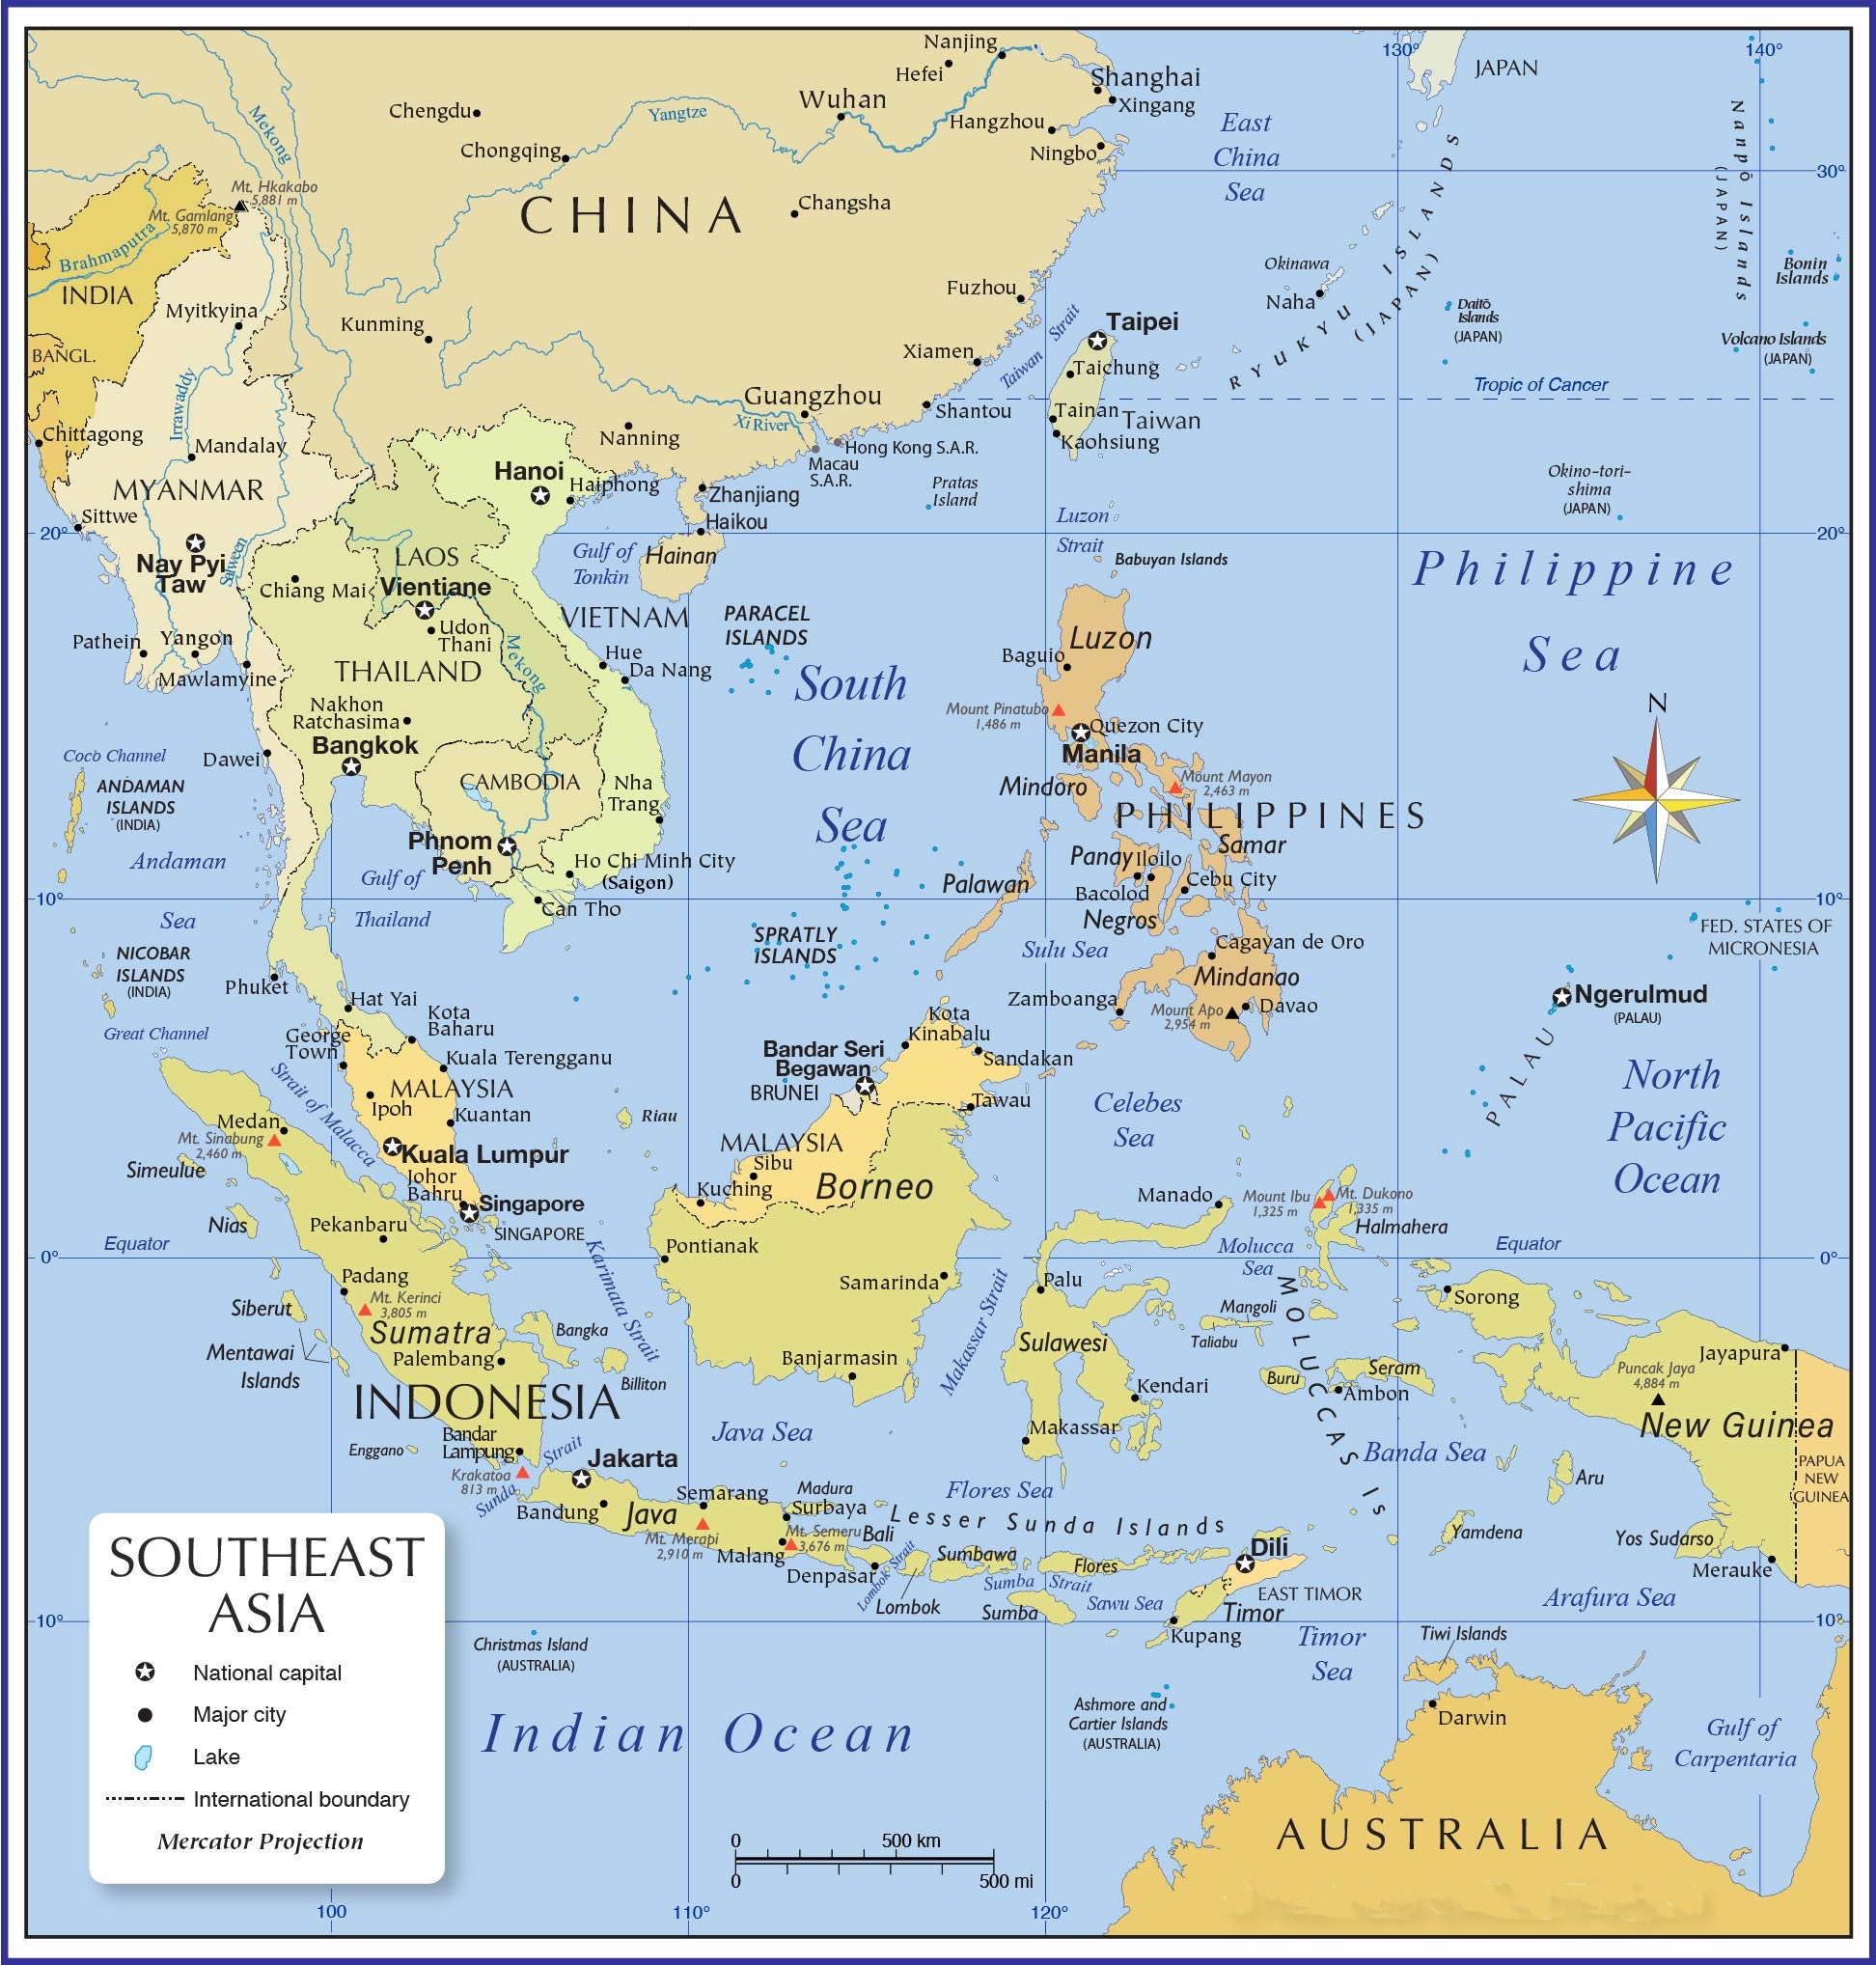 Tải bản đồ Đông Nam Á năm 2024 để khám phá những thông tin mới nhất về các đất nước và vùng lãnh thổ ở Đông Nam Á. Hãy tải ngay để có trải nghiệm khám phá tuyệt vời.